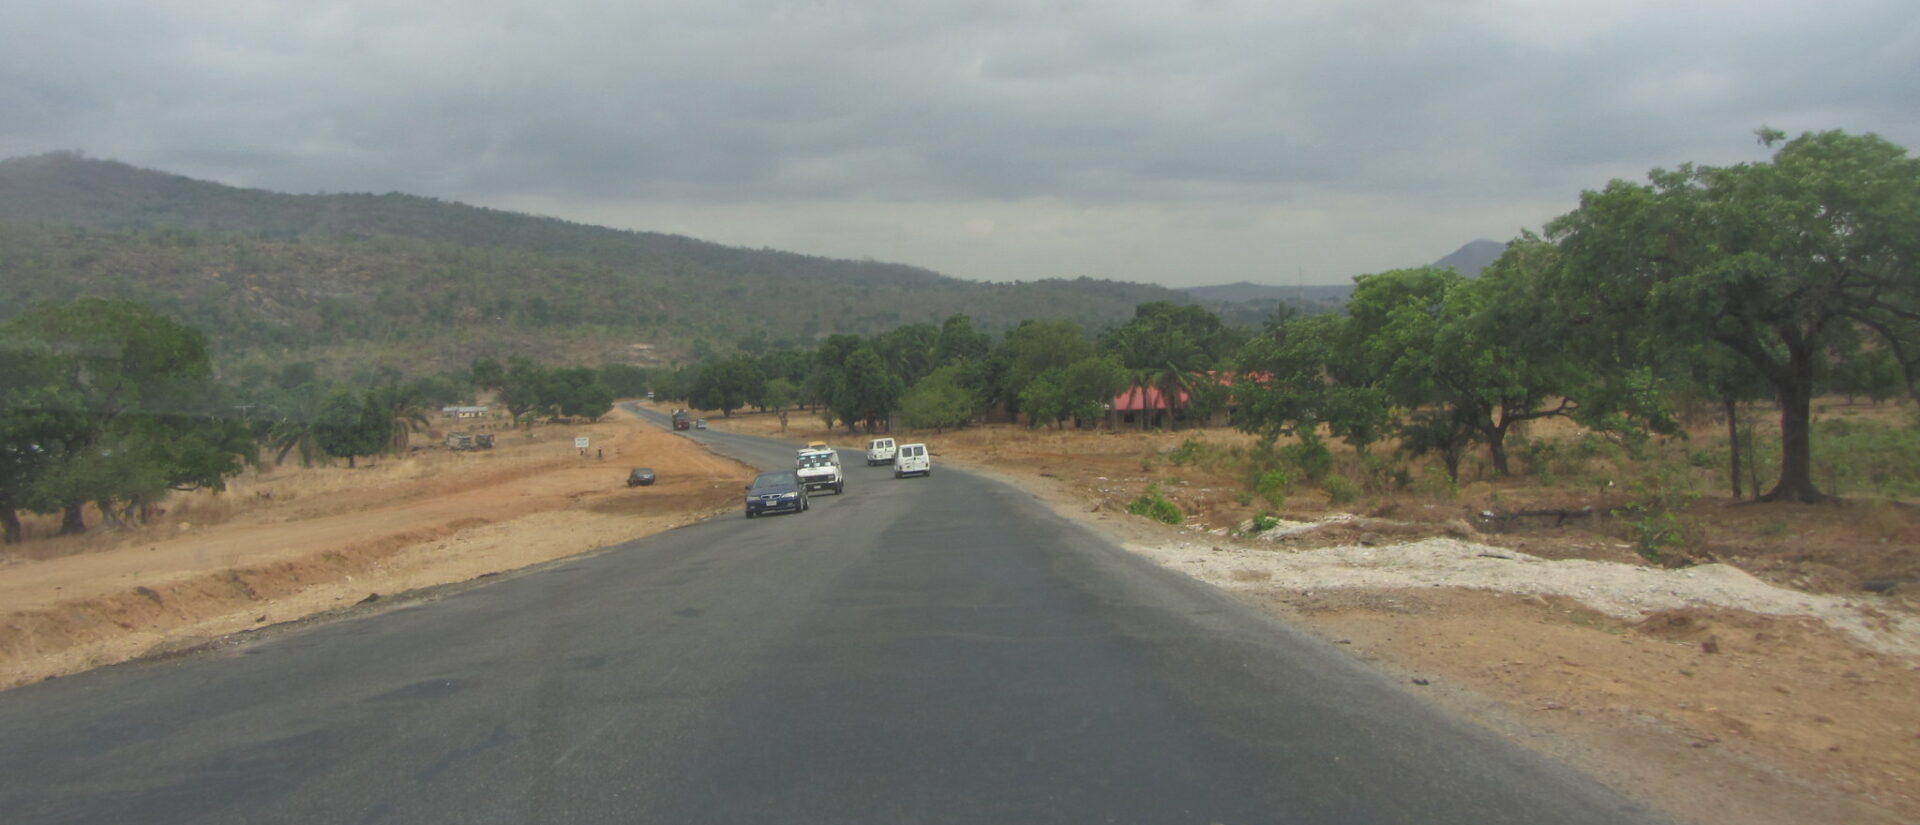 Les routes du Nigeria sont toujours moins sûres | photo d'illustration © Kris Fricke/Flickr/CC BY-NC-ND 2.0